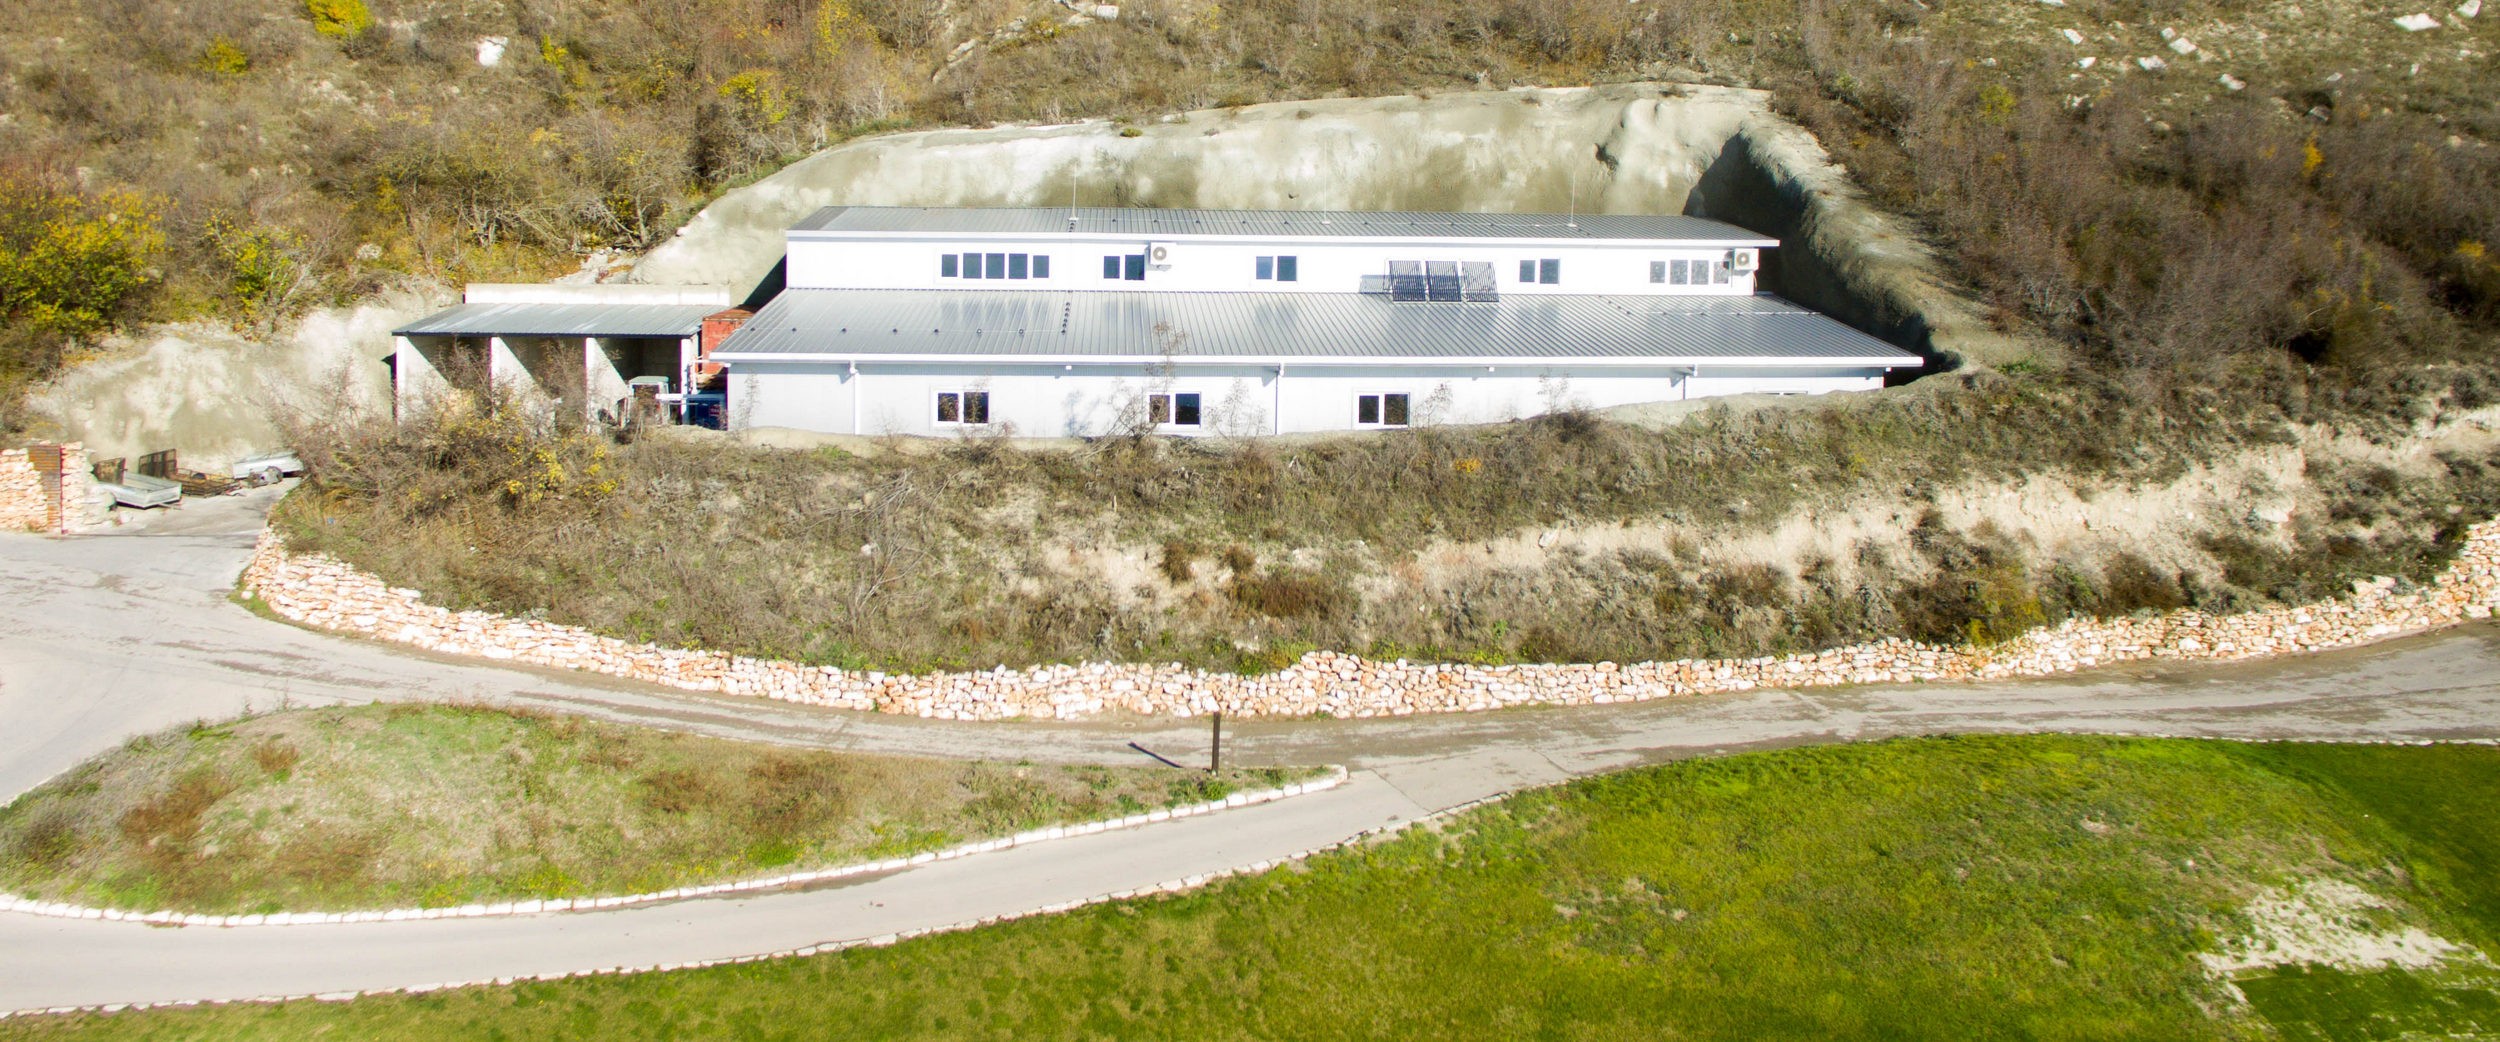 Lager- und Geräteschuppen von Thracian Cliffs Golf & Spa Resort